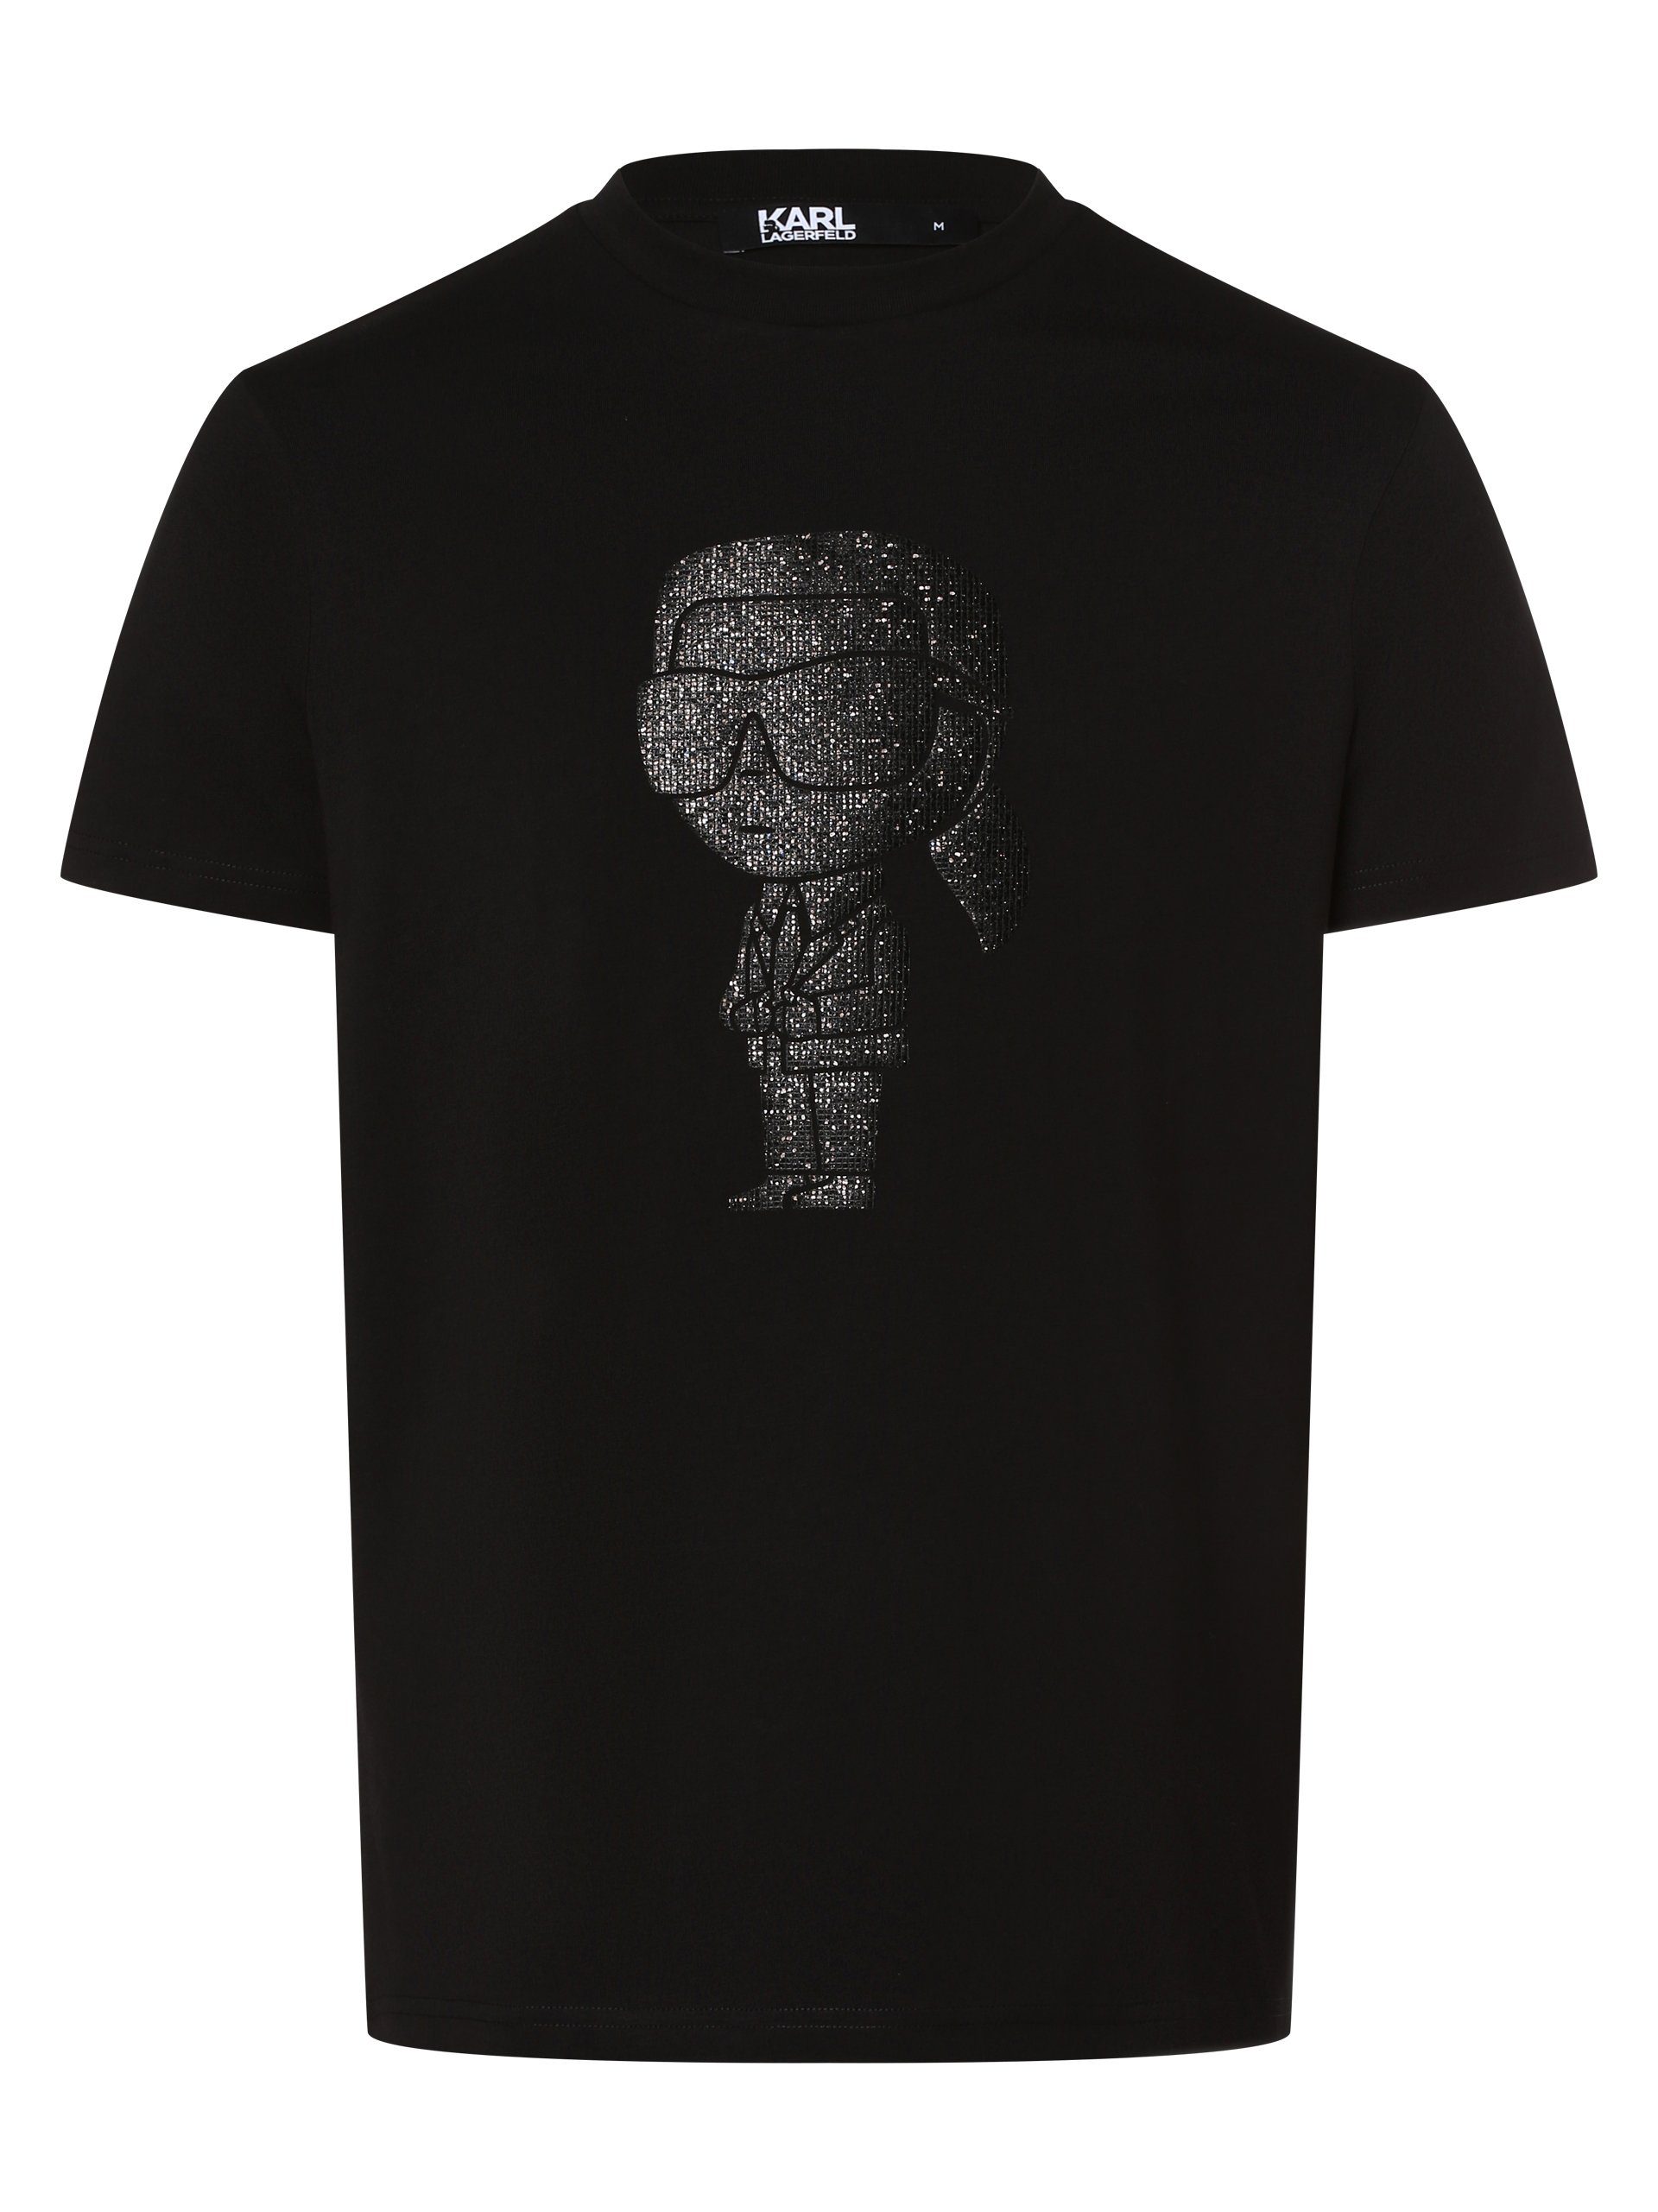 KARL LAGERFELD T-Shirt schwarz schwarz